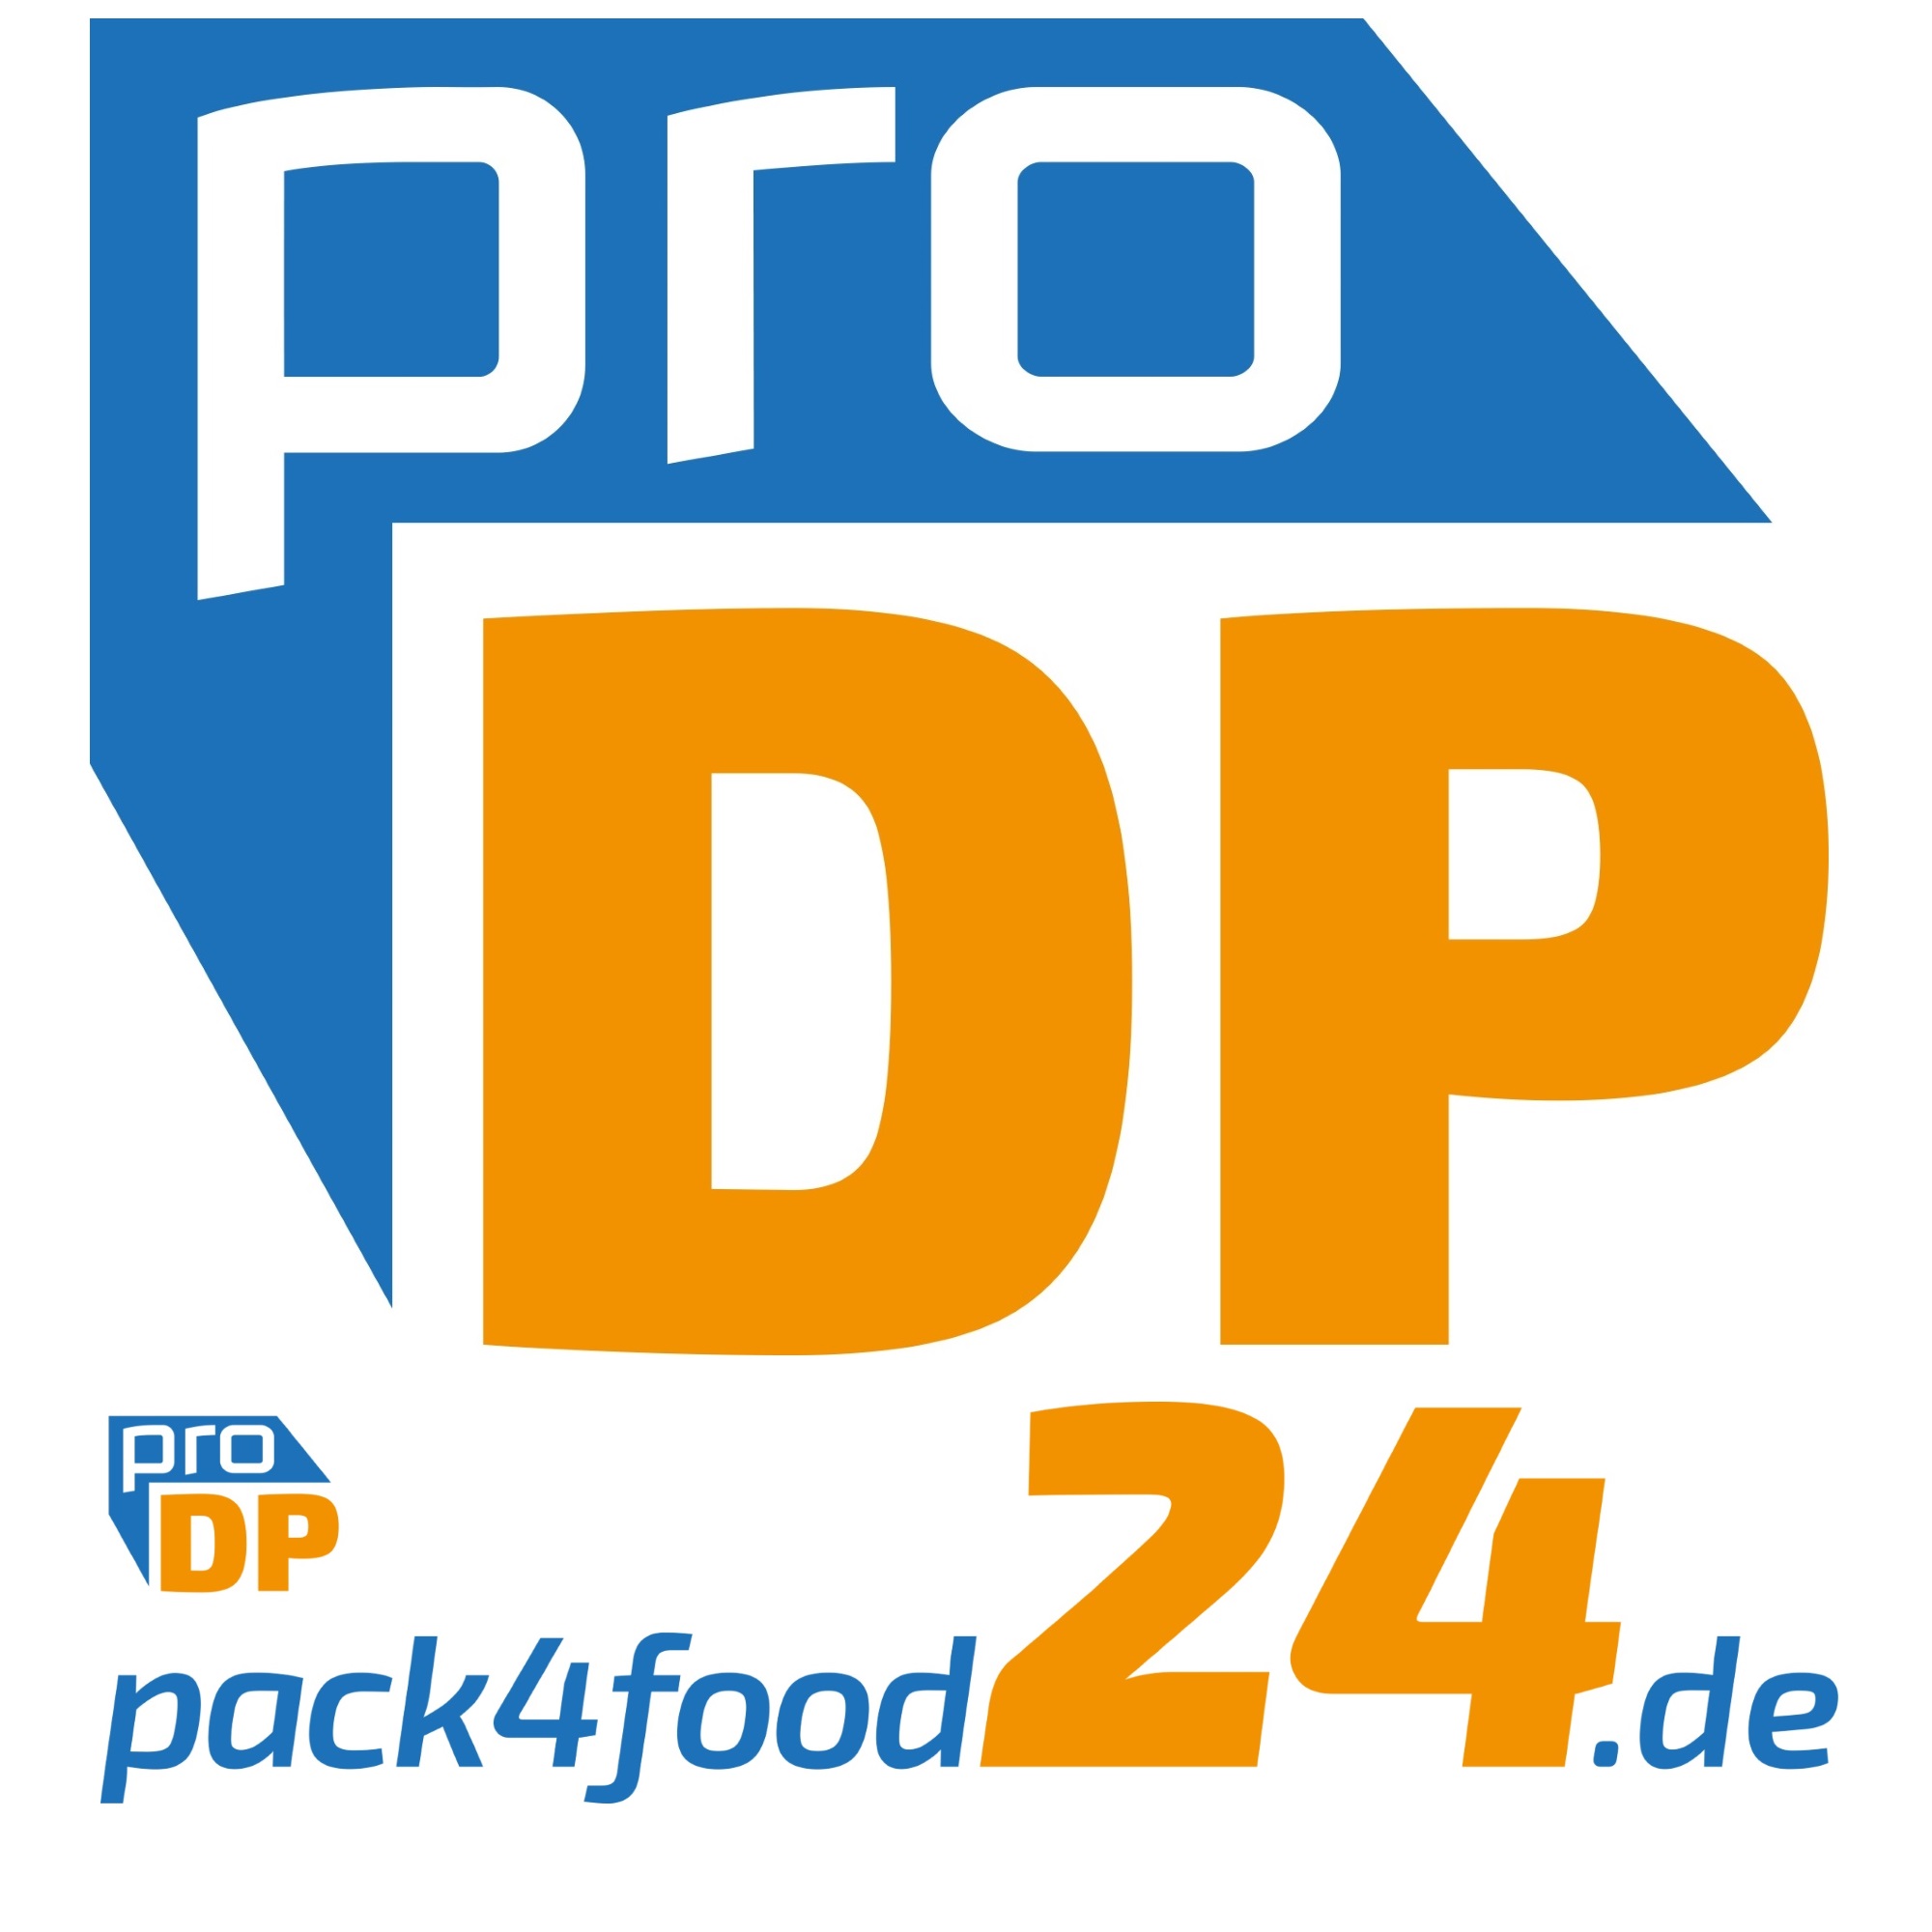 Pack4Food24.de – Das B2B Onlineportal der Pro DP Verpackungen